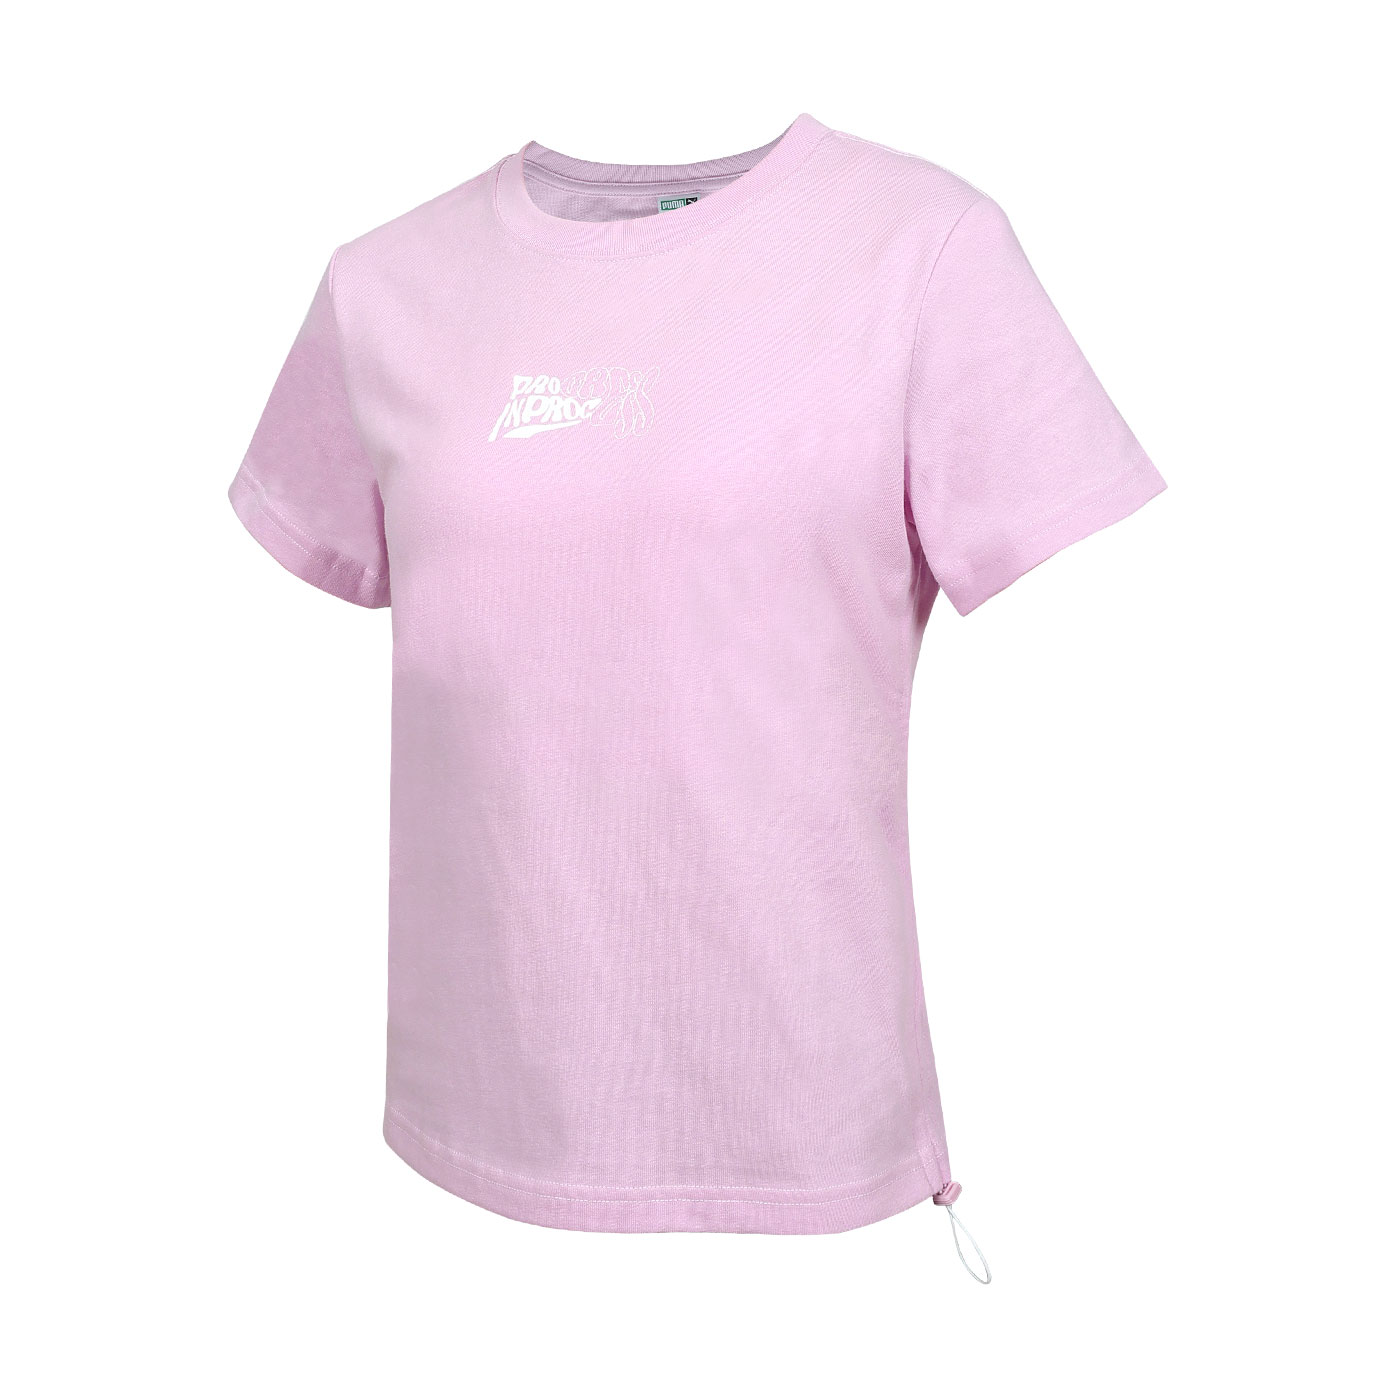 PUMA 女款流行系列舞動短袖T恤  62686560 - 粉白